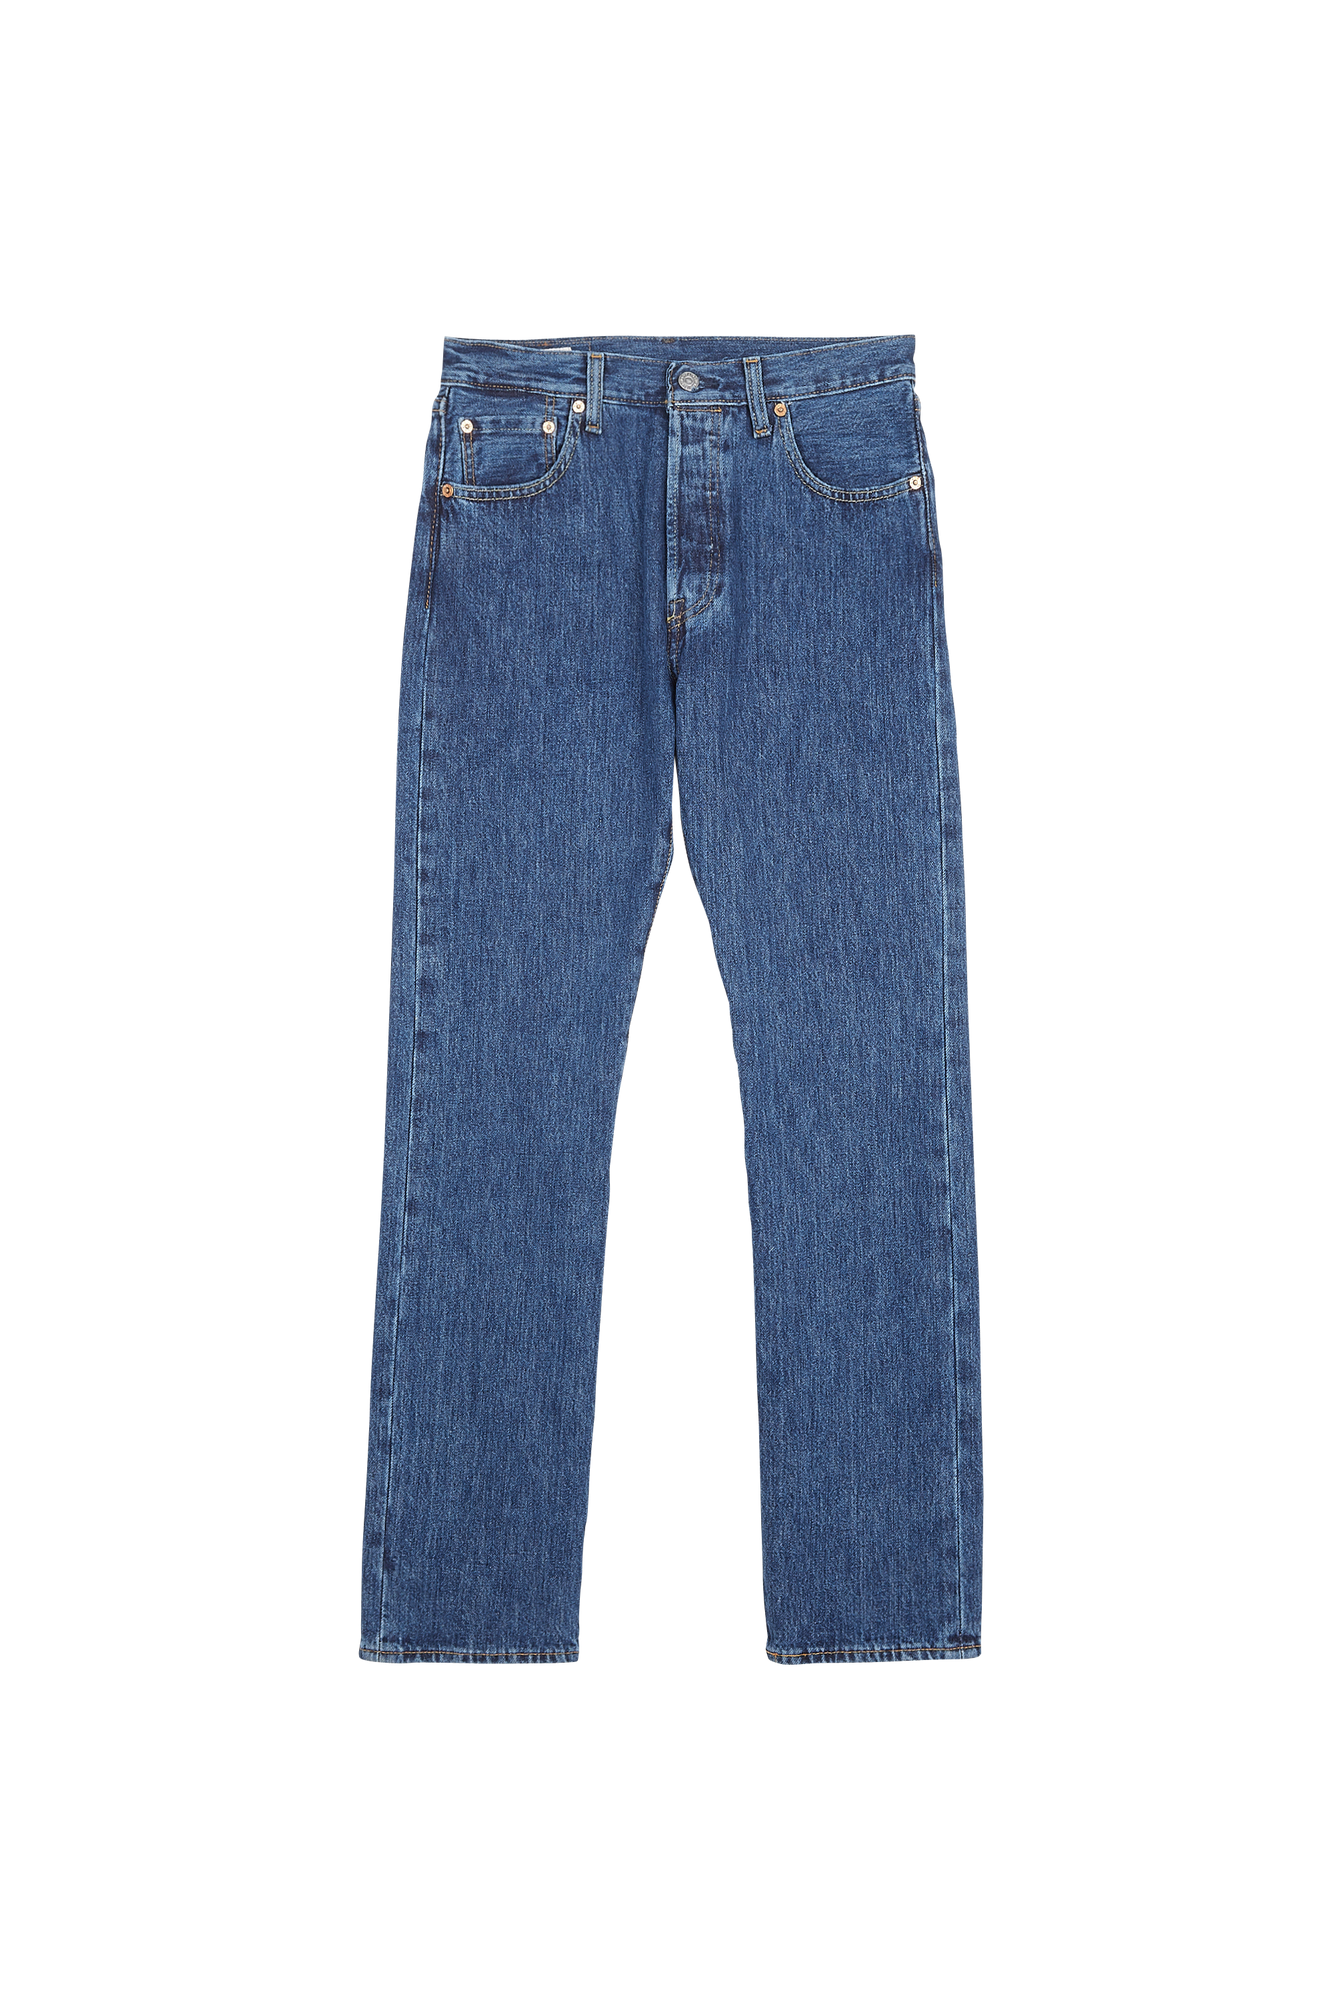 Levi's - Jean 501 regular-fit en coton stretch - Taille 29/32